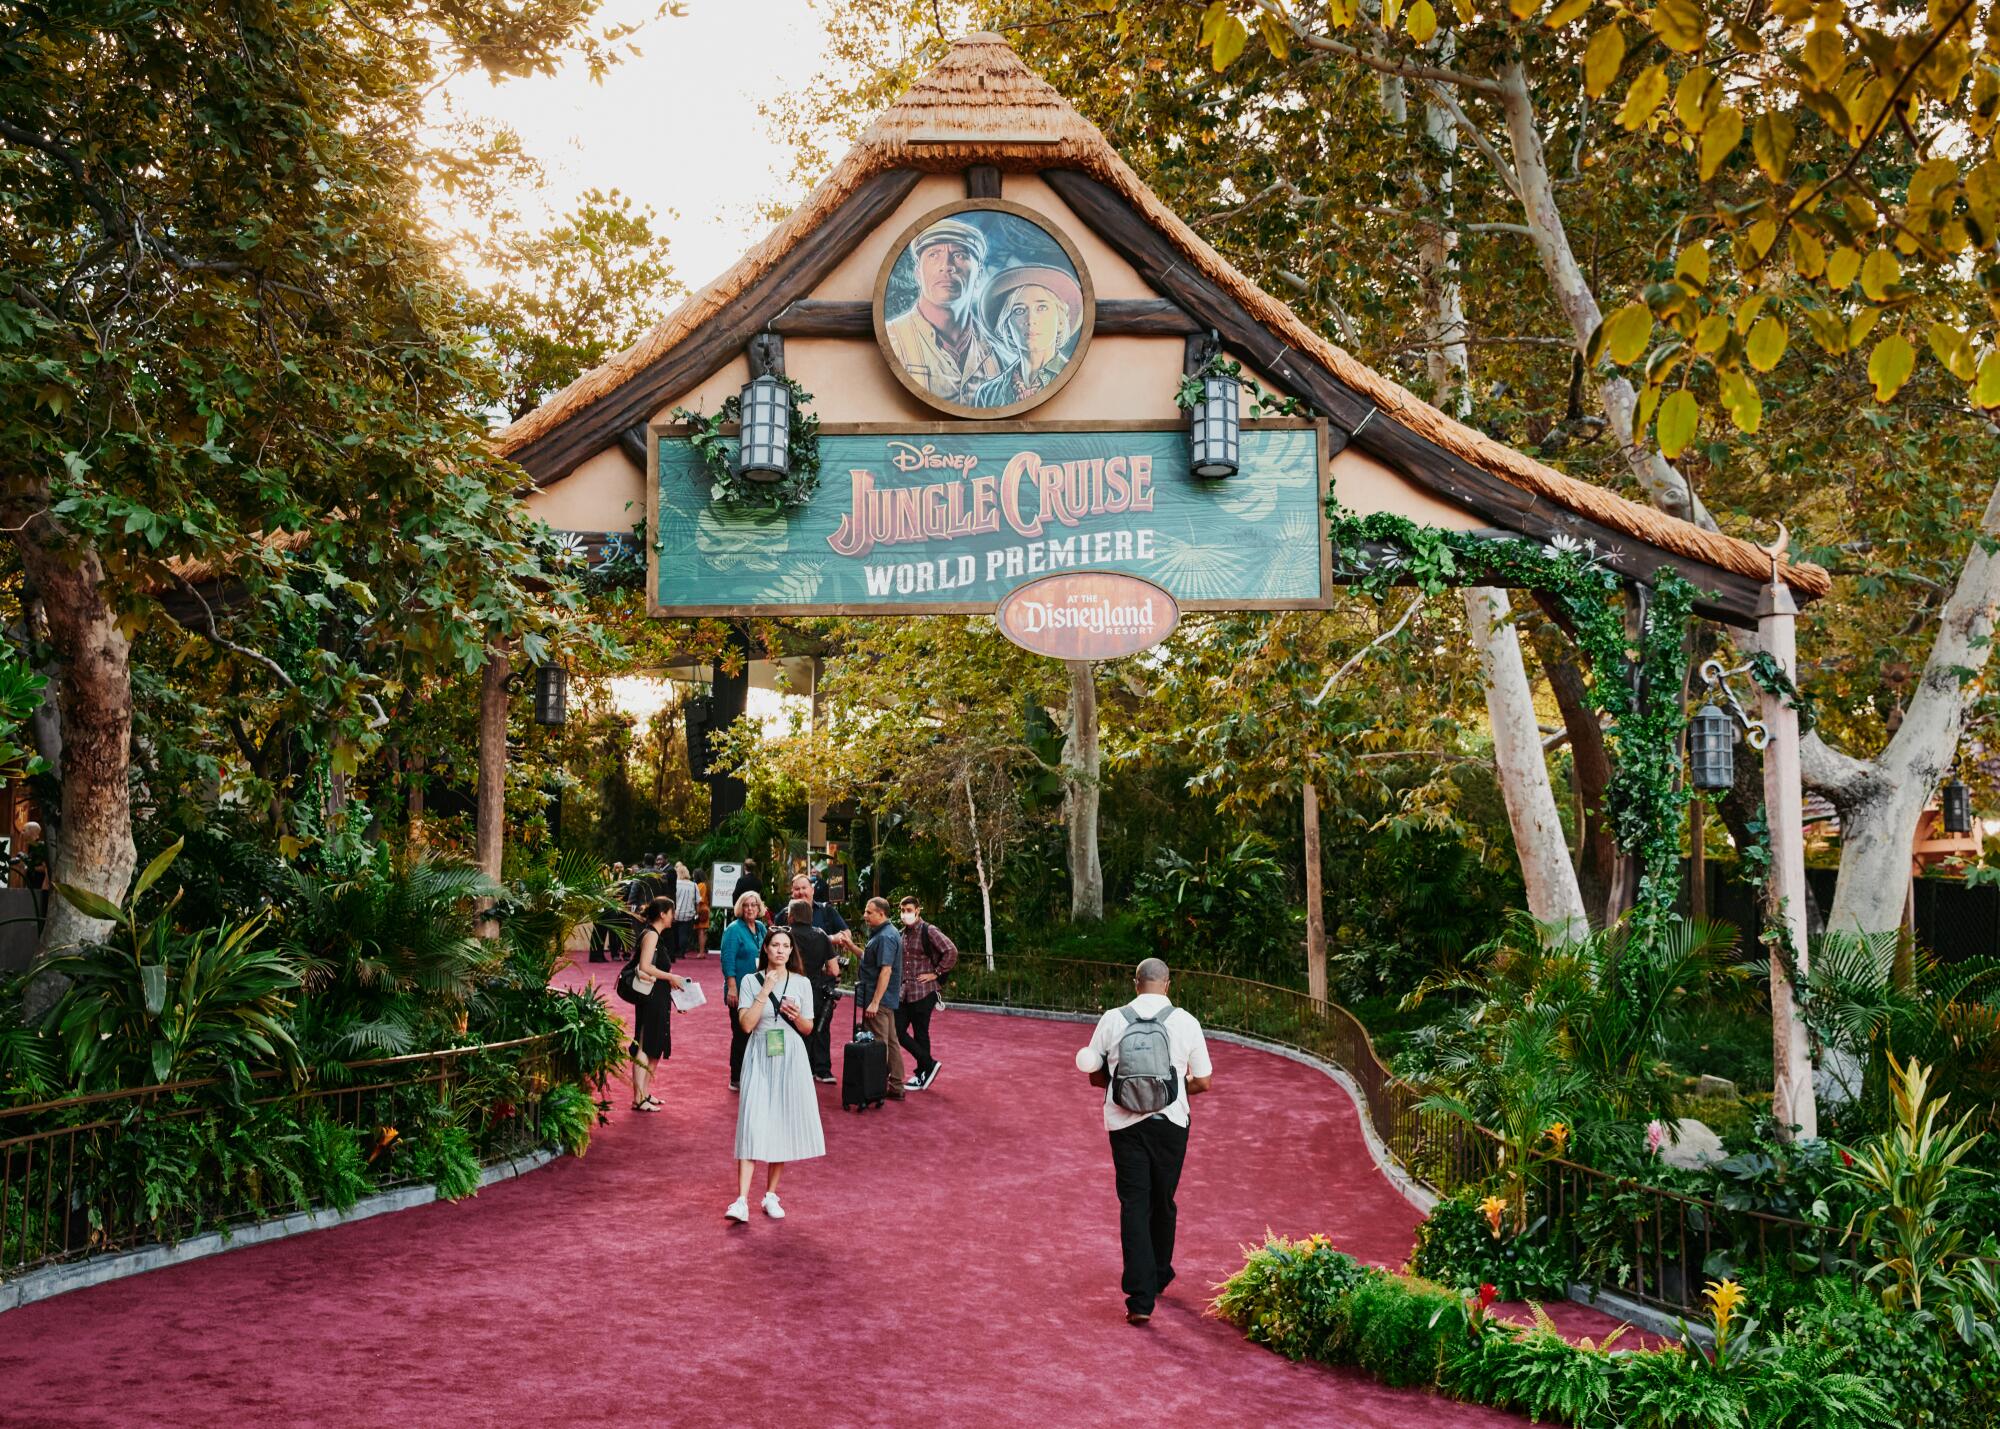 La entrada al teatro para el estreno de "The Jungle Cruise".